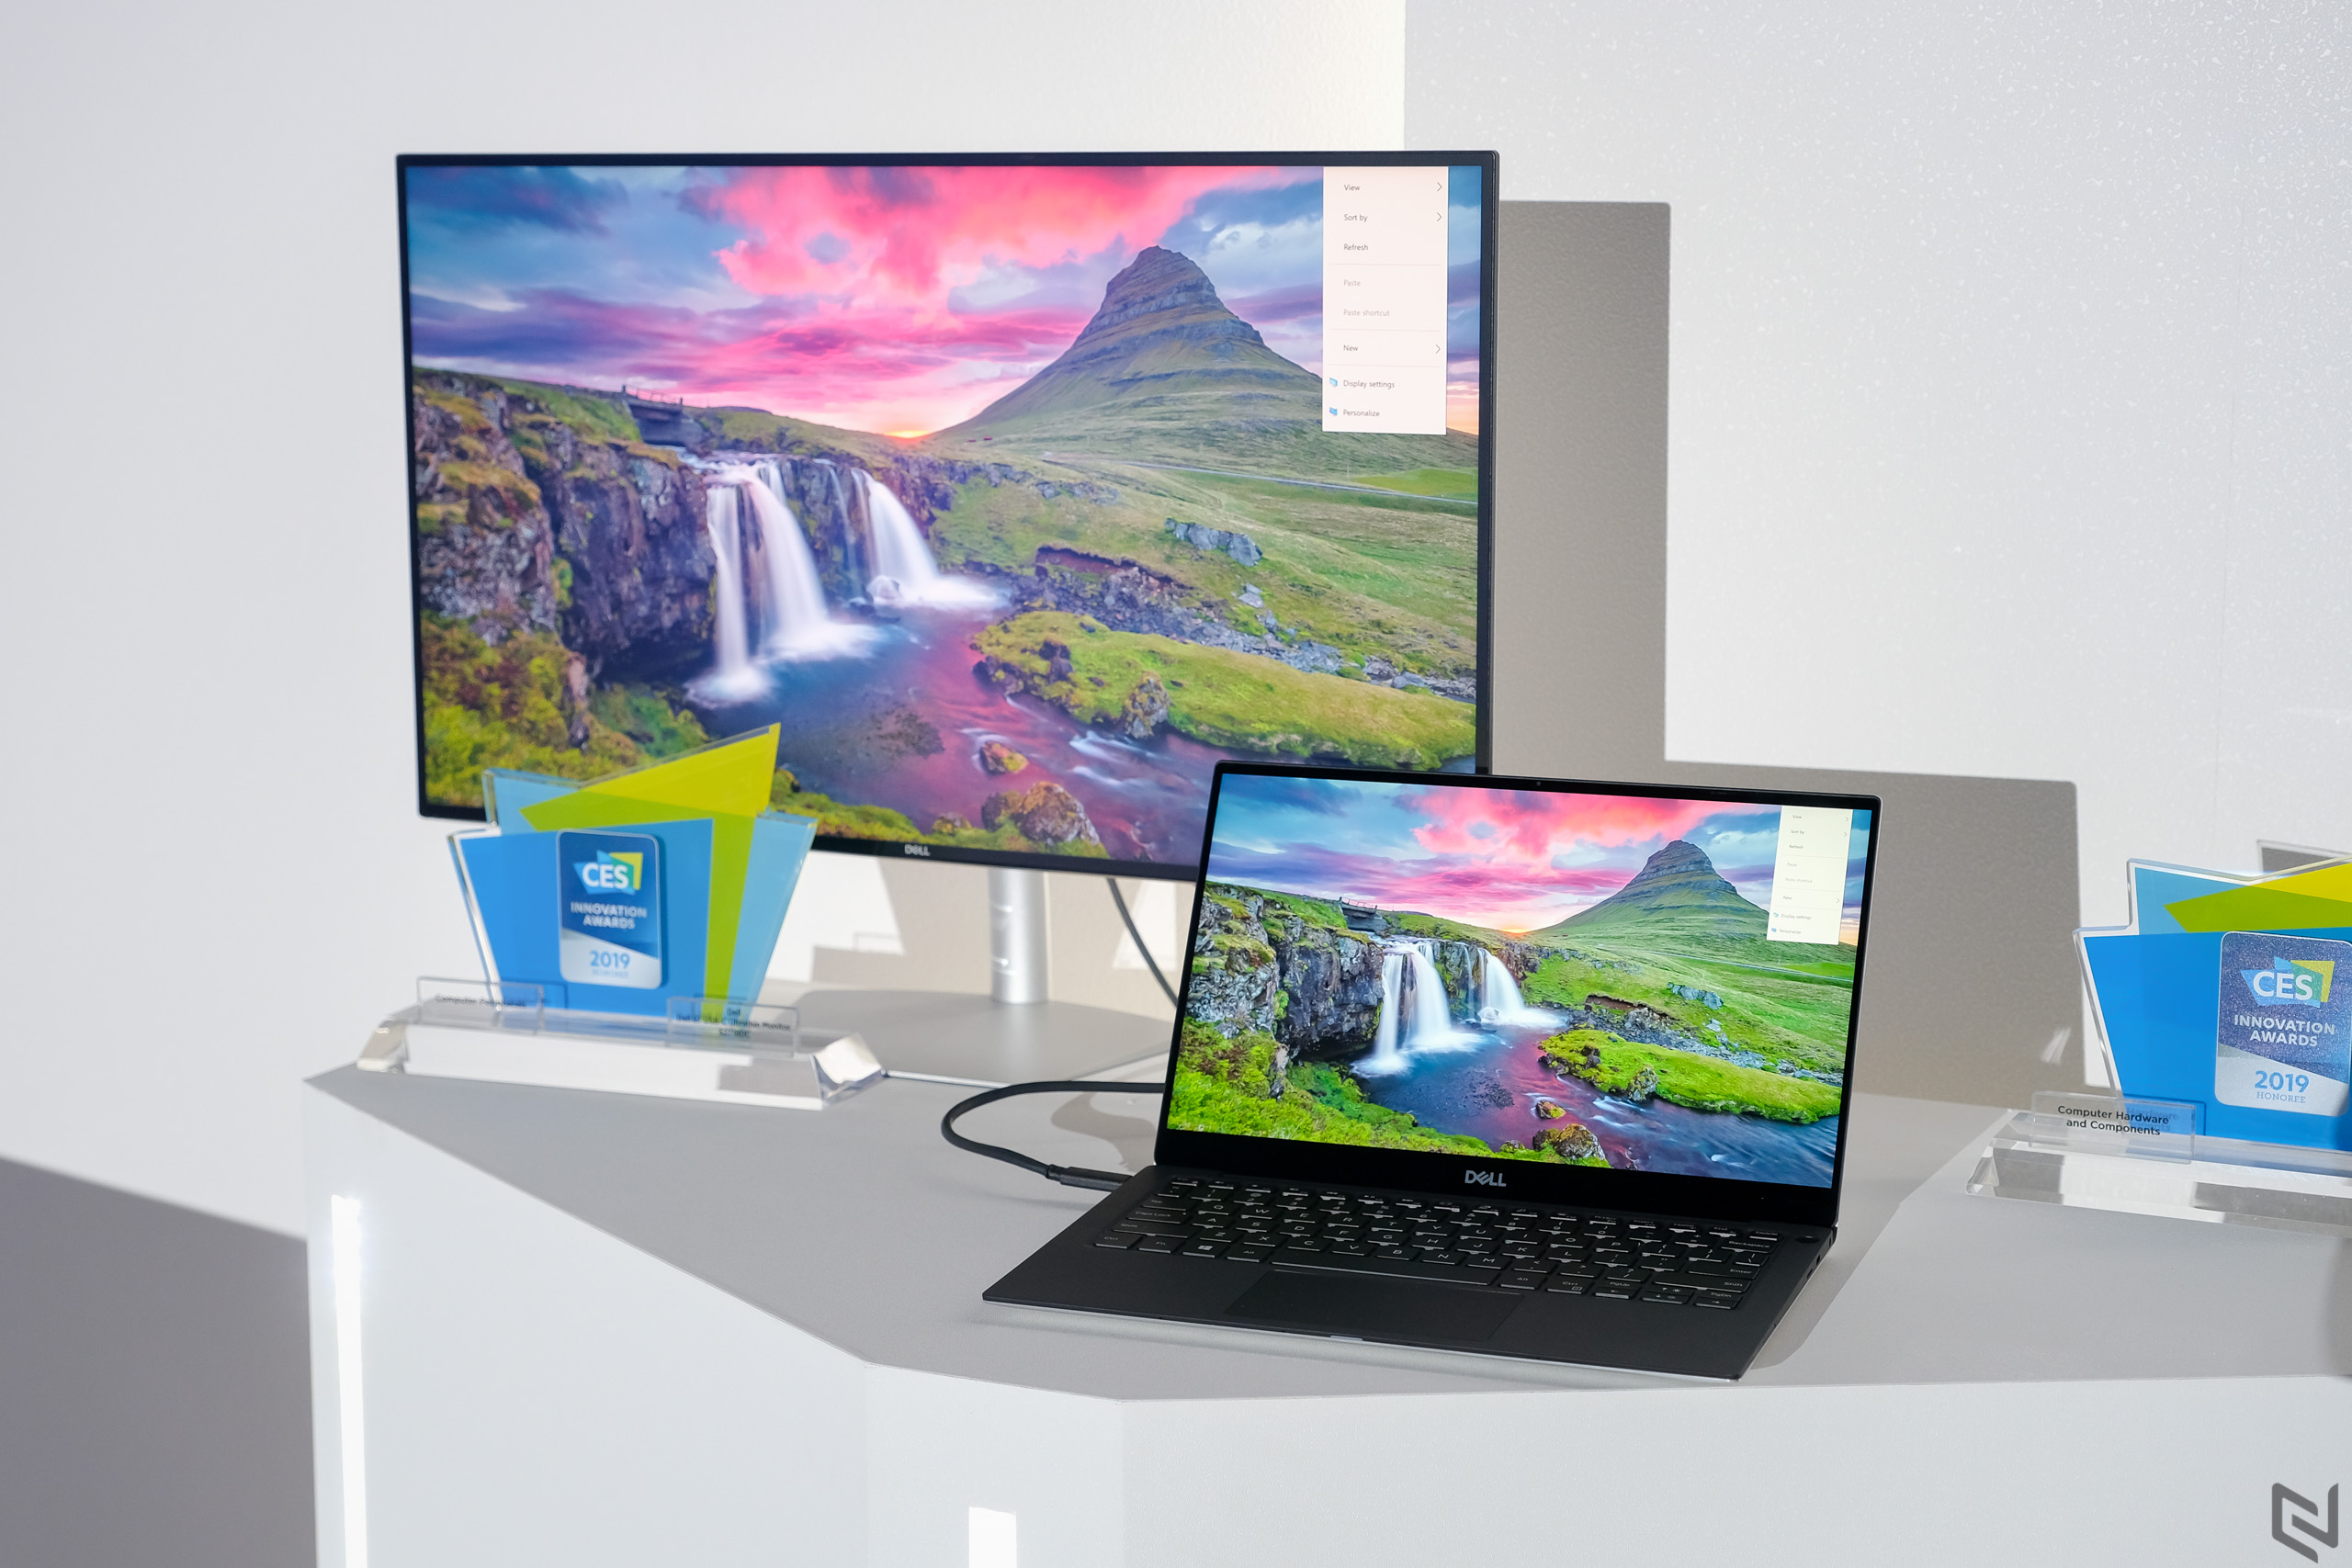 Dell ra mắt laptop Inspiron mới tại Computex 2019: Giá tốt, tập trung vào tản nhiệt thông minh